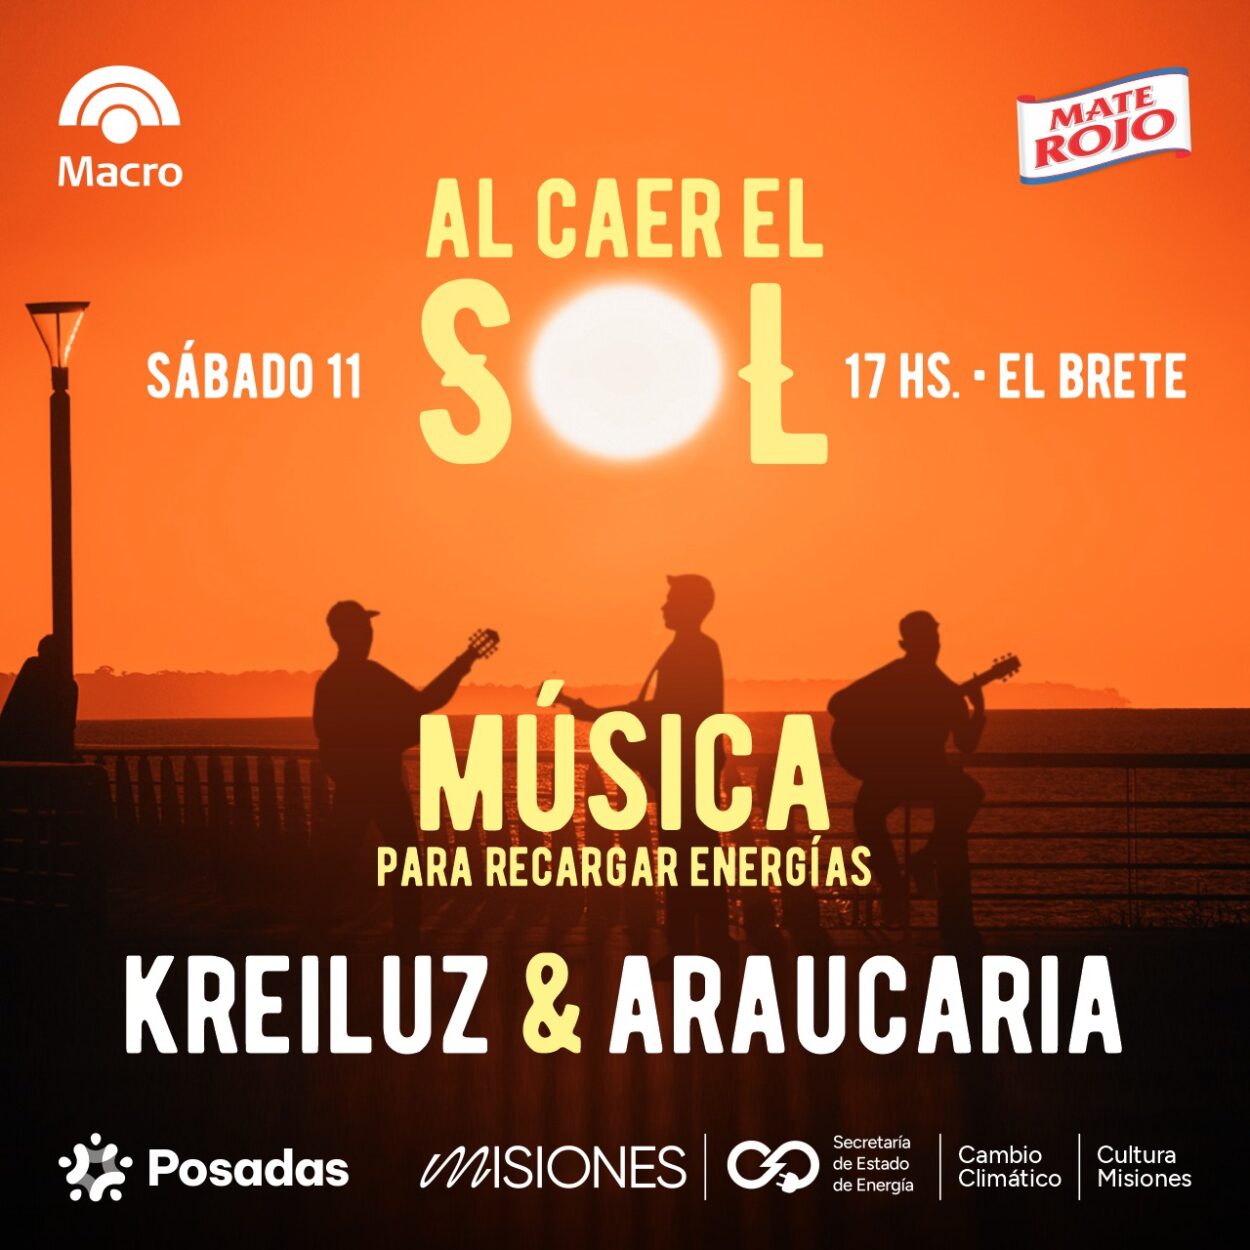 Araucaria y Kreiluz aportarán su energía musical este sábado en El Brete imagen-57